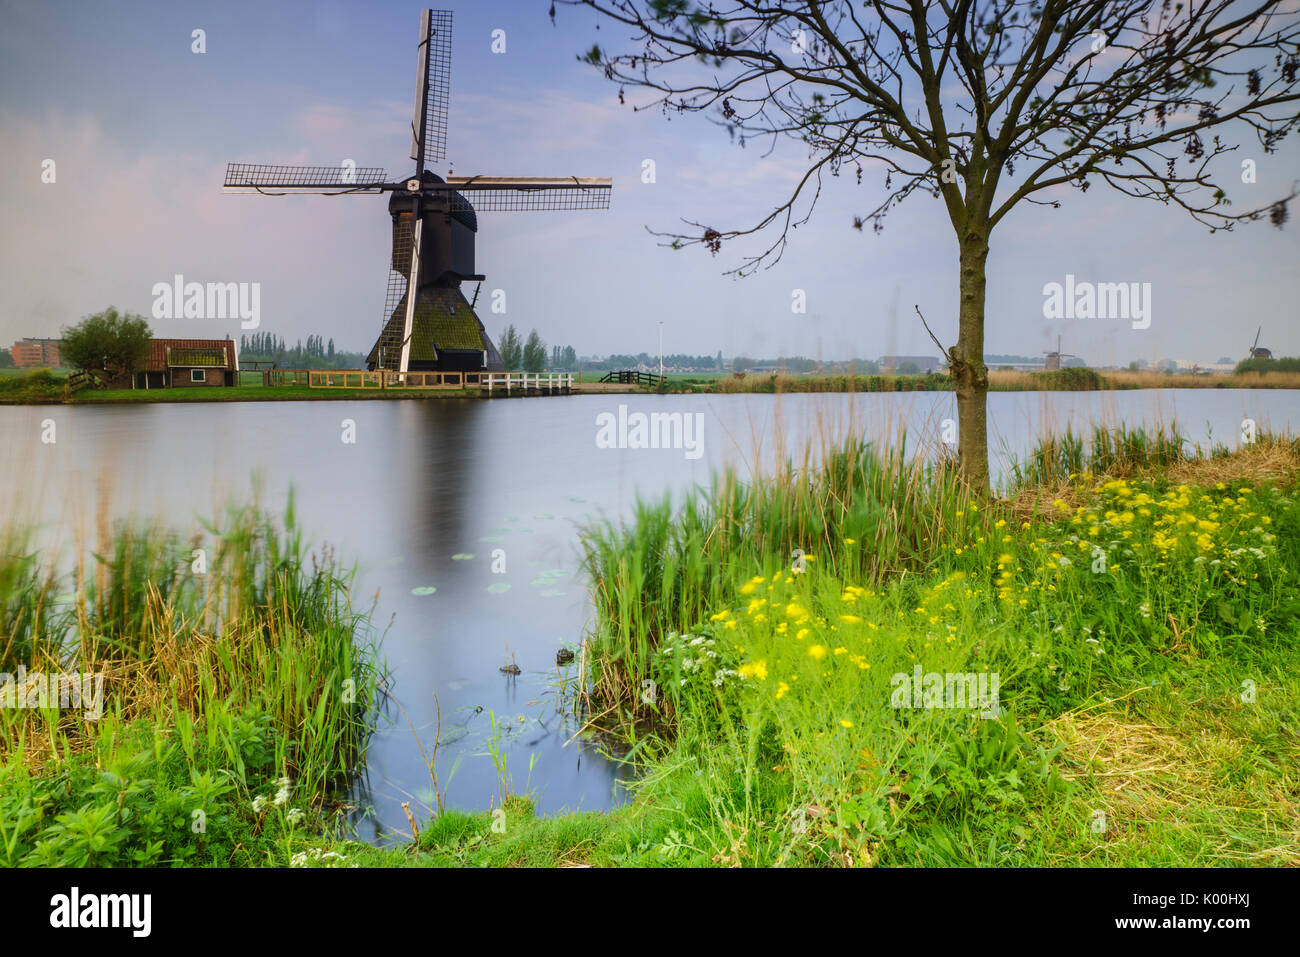 Fleurs jaune le moulin bâti reflète dans le canal à l'aube Kinderdijk Rotterdam Pays-Bas Hollande du Sud Europe Banque D'Images